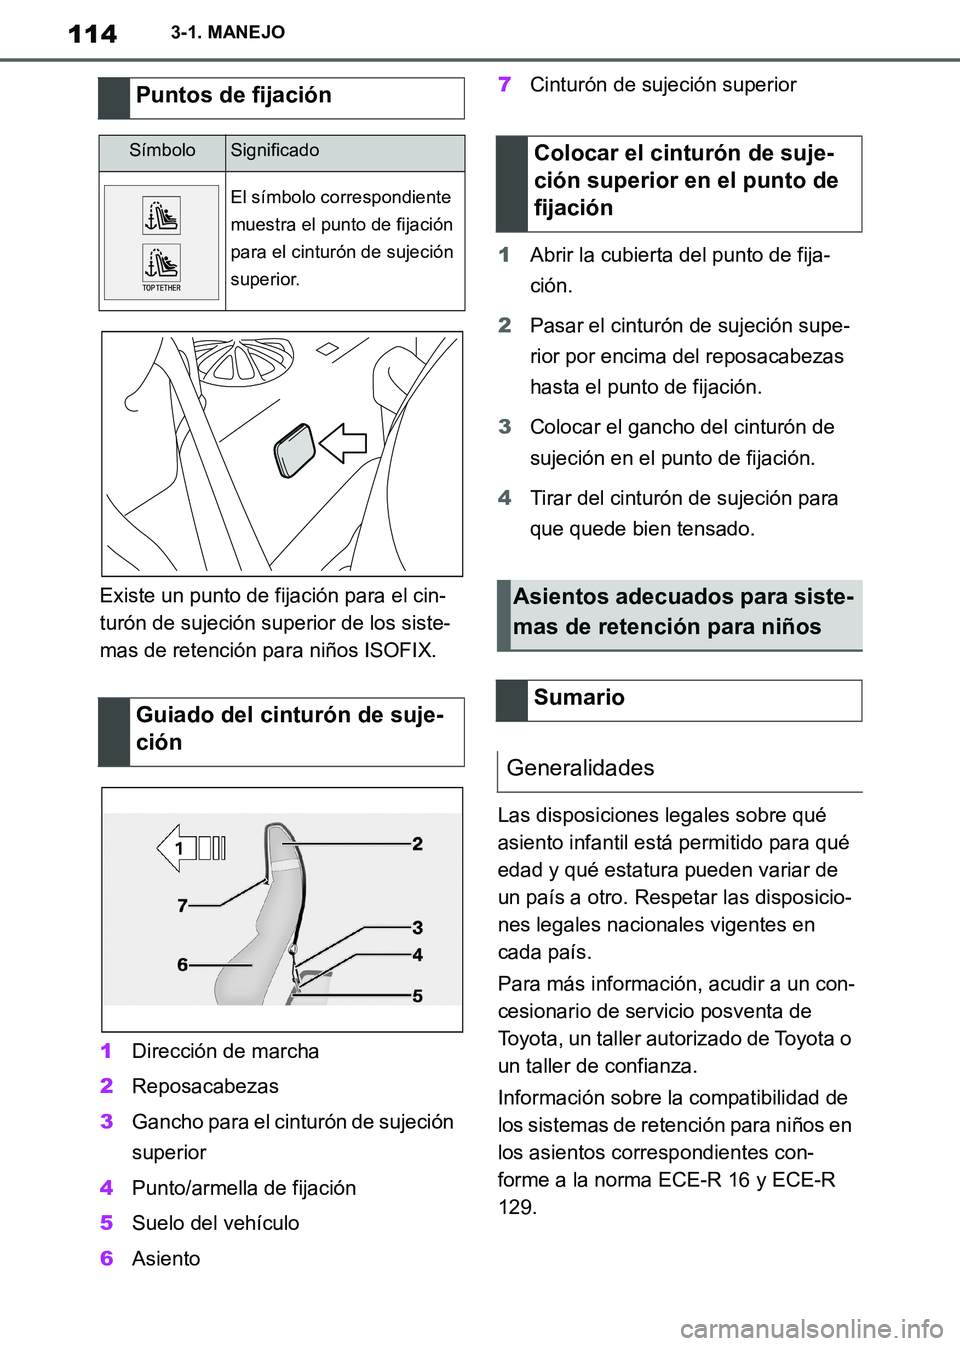 TOYOTA SUPRA 2019  Manuale de Empleo (in Spanish) 114
Supra Owners Manual_ES
3-1. MANEJO
Existe un punto de fijación para el cin-
turón de sujeción superior de los siste-
mas de retención para niños ISOFIX.
1Dirección de marcha
2Reposacabezas
